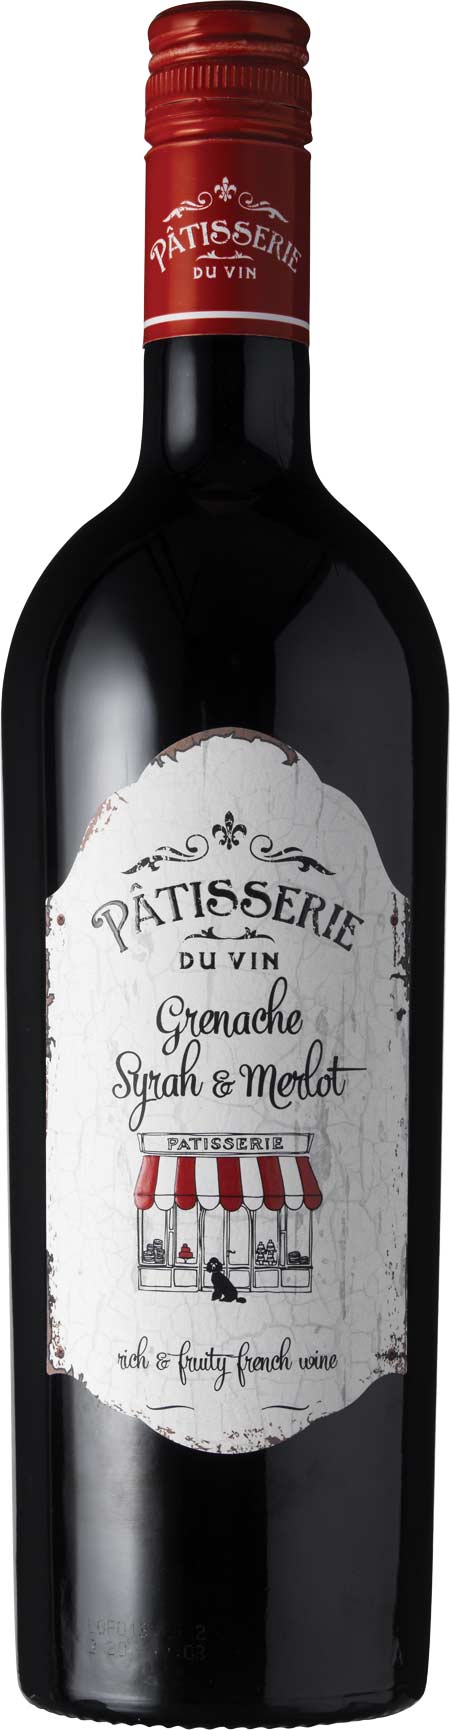 Pâtisserie Du Vin - Grenache-Syrah-Merlot - Vin de France